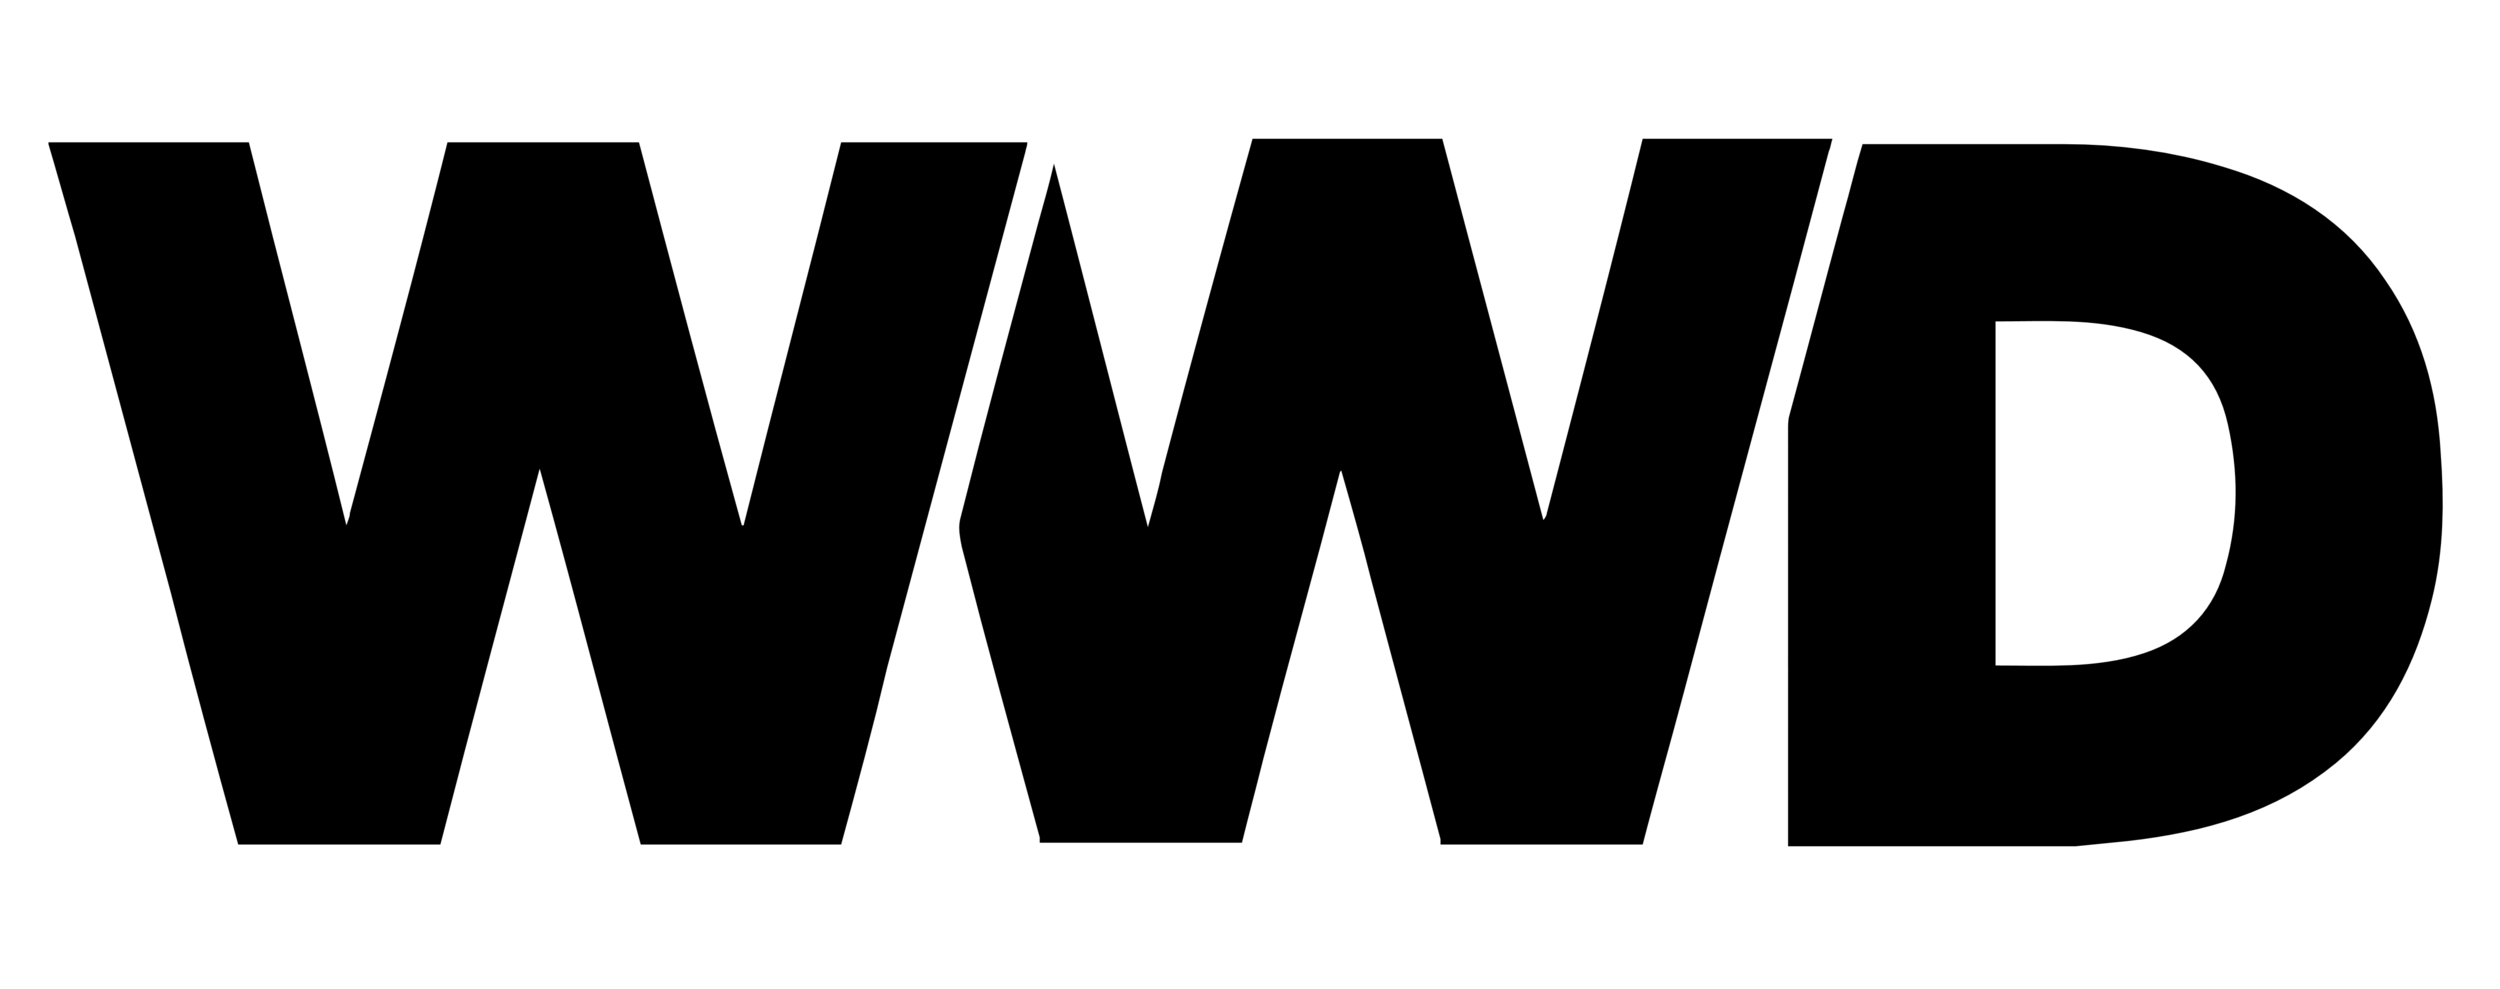 WWD Logo.png